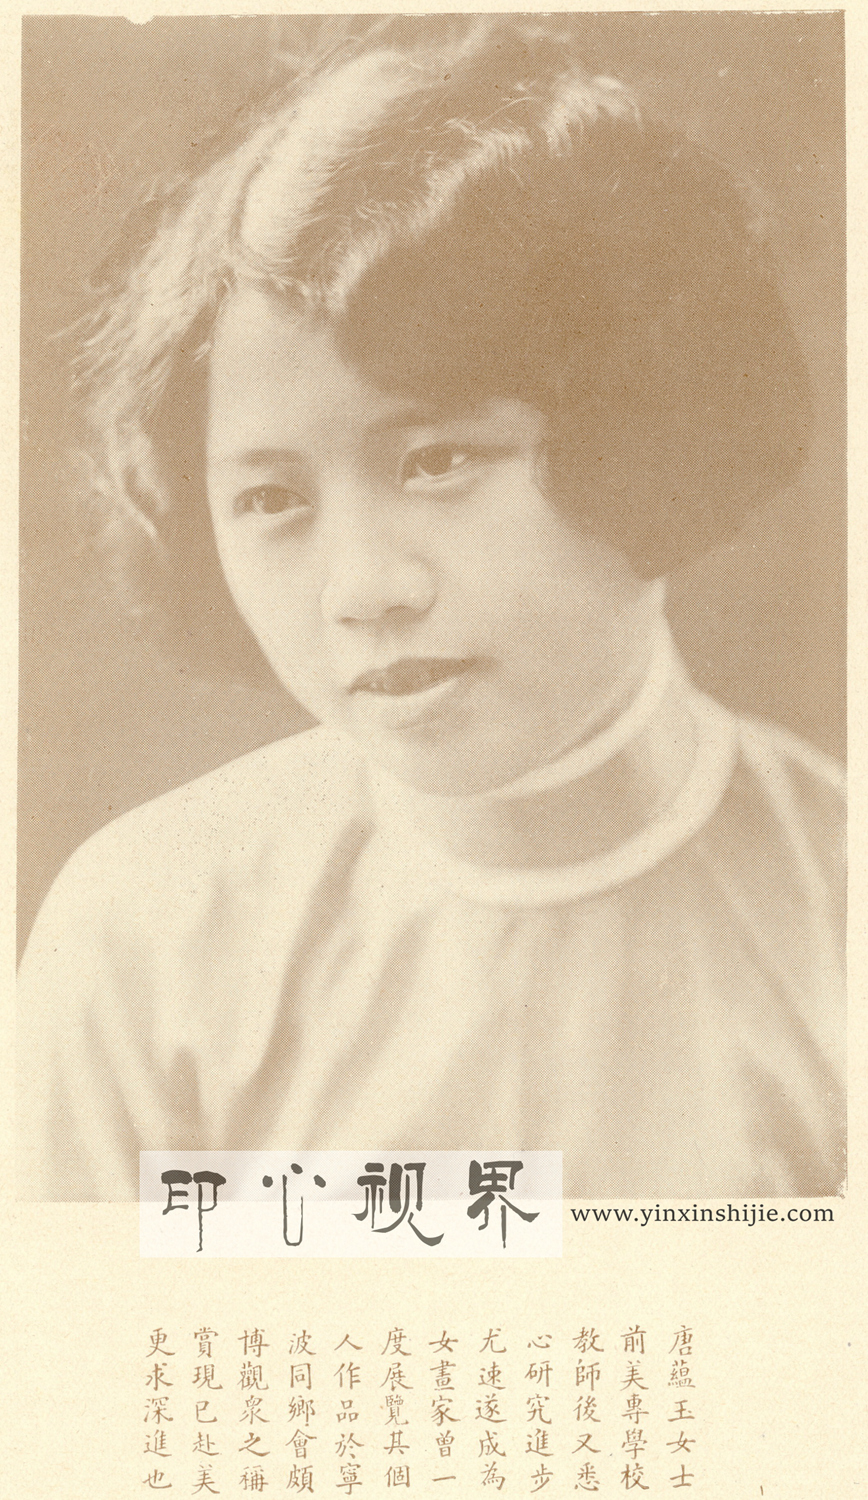 ＂淡泊之蕴＂之留法女画家唐蕴玉女士--1930年《闺秀影集》